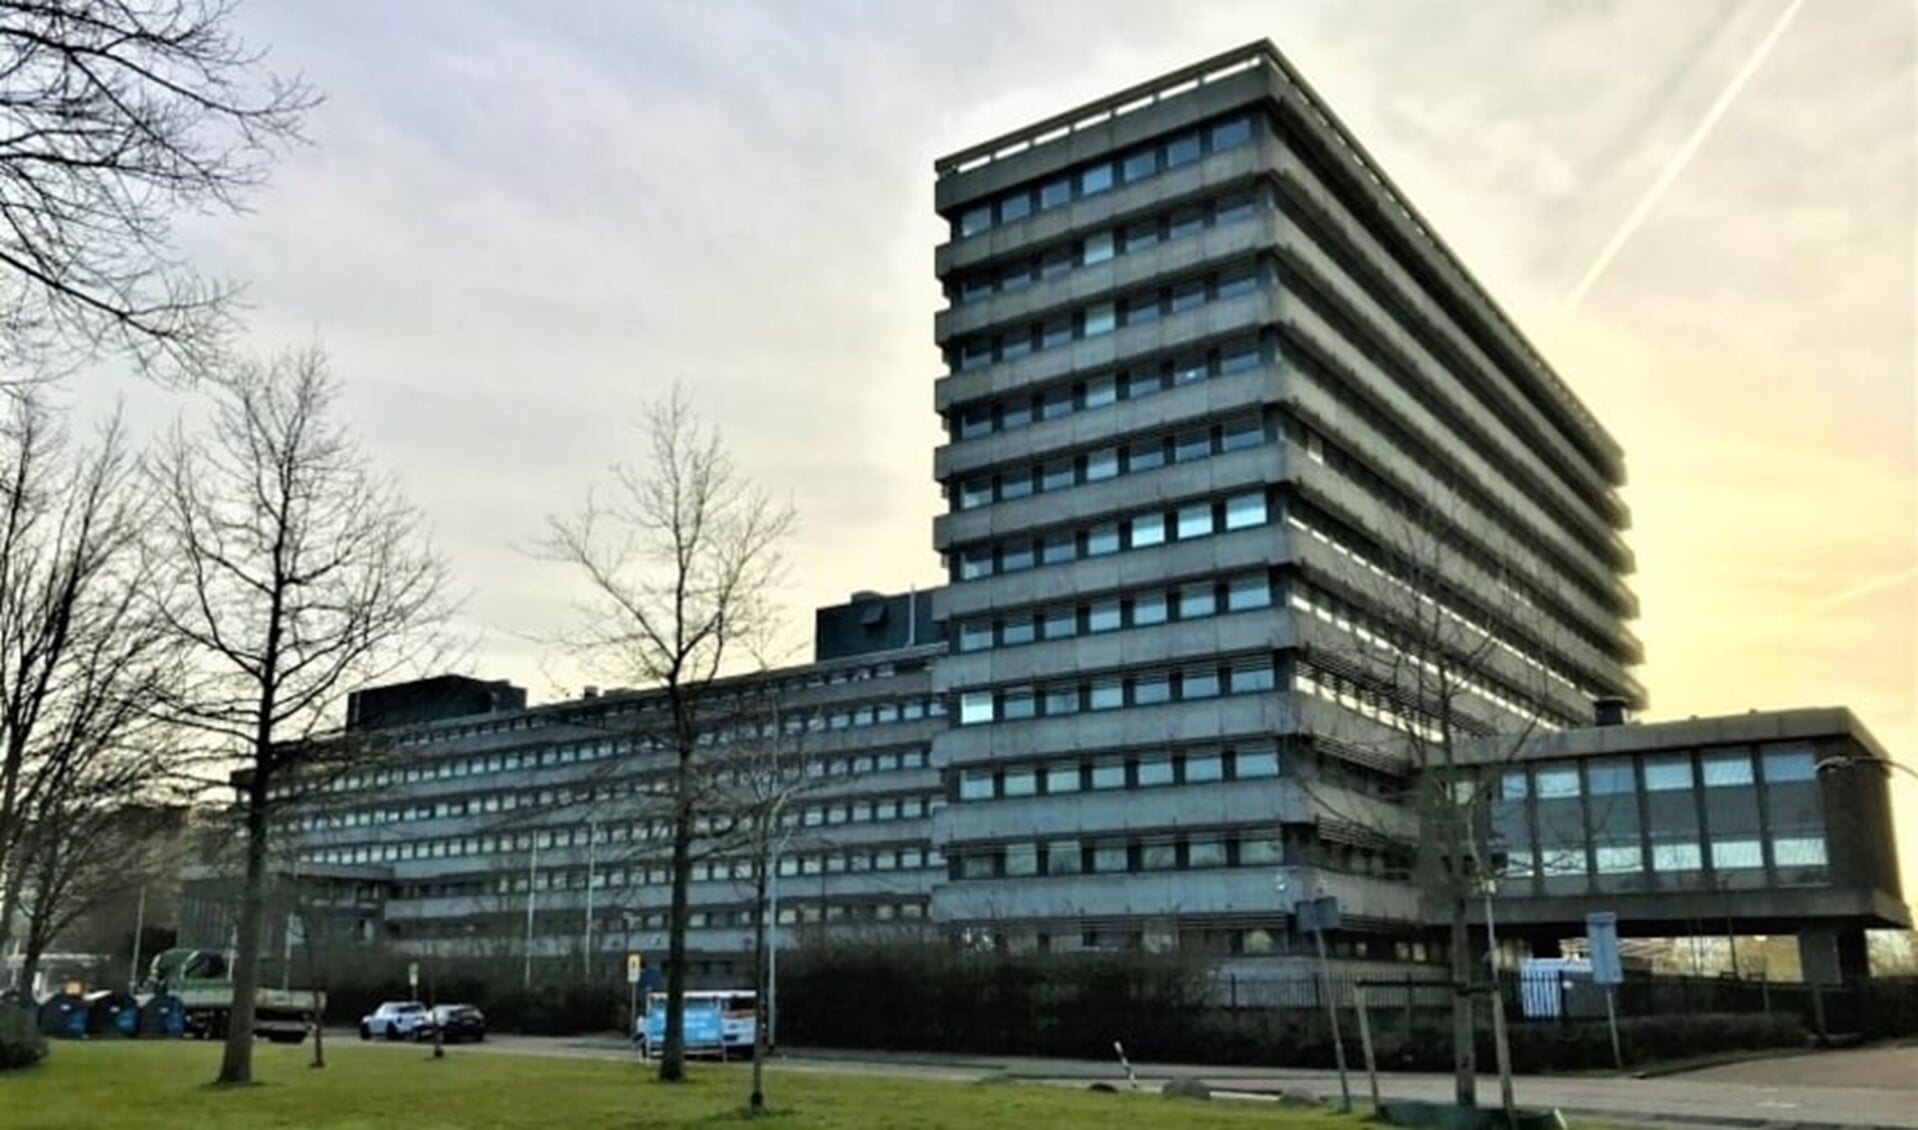 Het voormalige Total-gebouw aan het Oosteinde in Voorburg dat deel uitmaakt van Klein Plaspoelpolder wordt gesloopt (foto: gemeente LV).